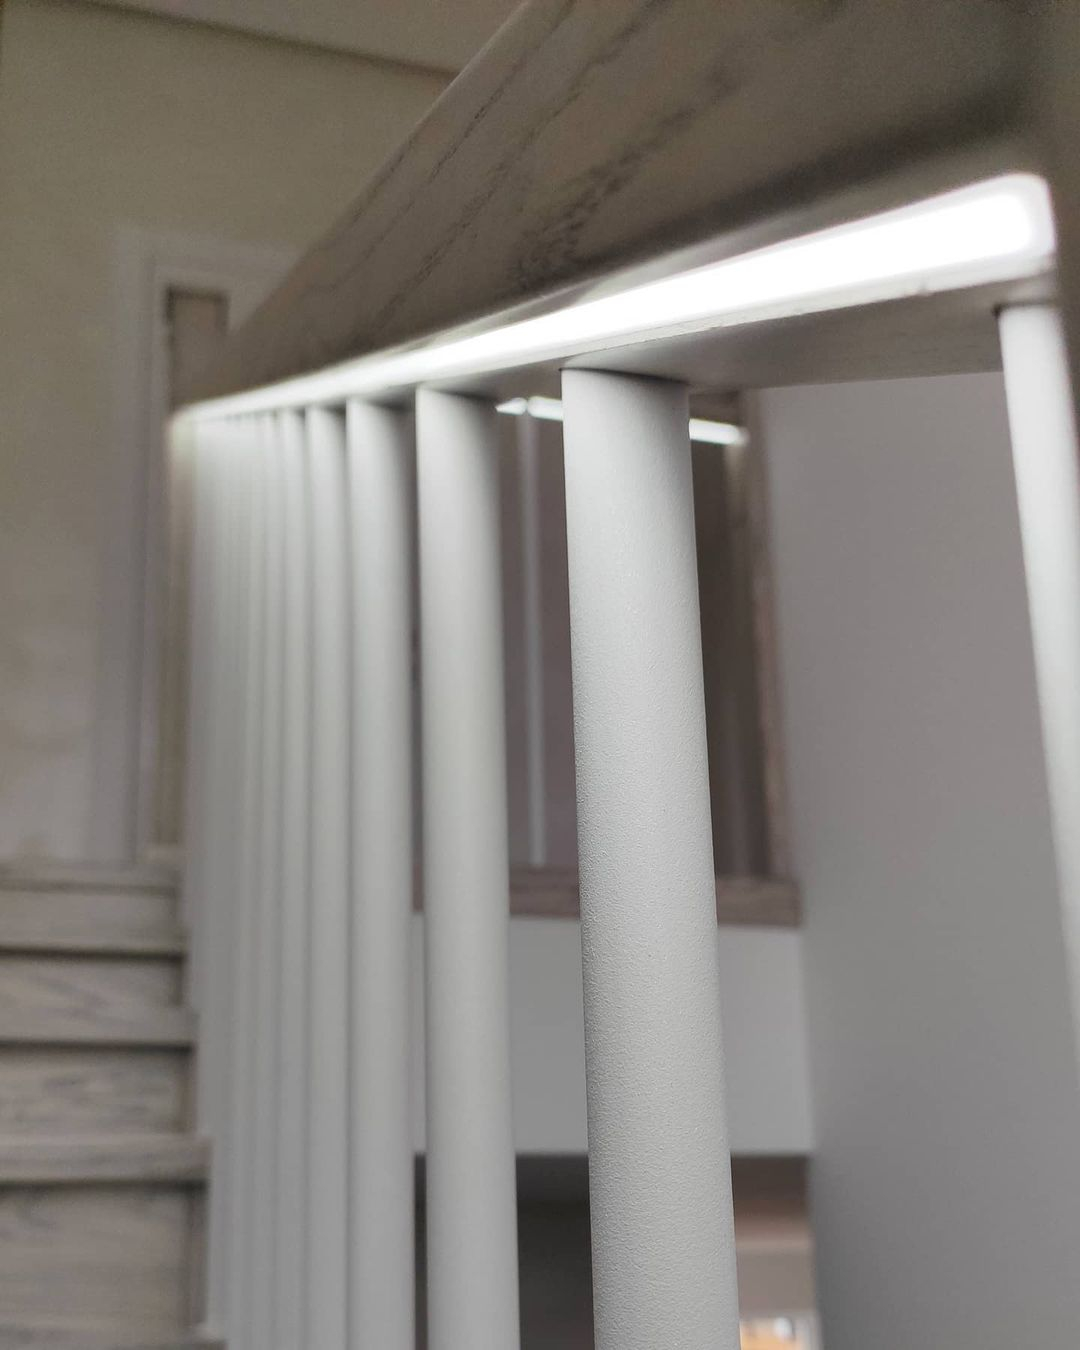 П- образная лестница Осло с комбинированными перилами фото7